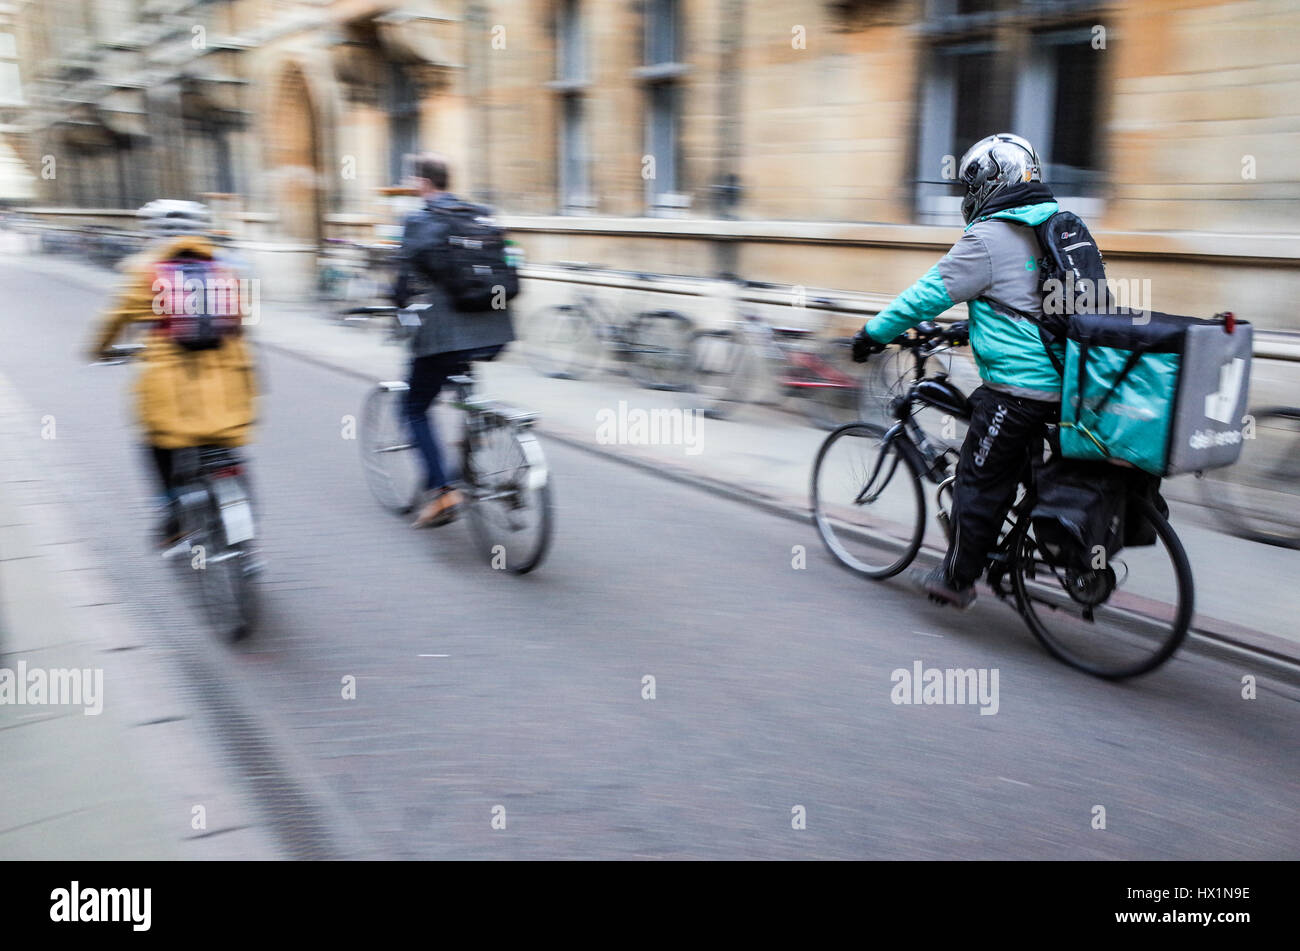 Un Deliveroo courier alimentaire s'engouffre dans les rues de Cambridge, UK, pour livrer de la nourriture à emporter aux clients qui commandent sur leur smartphone. Banque D'Images